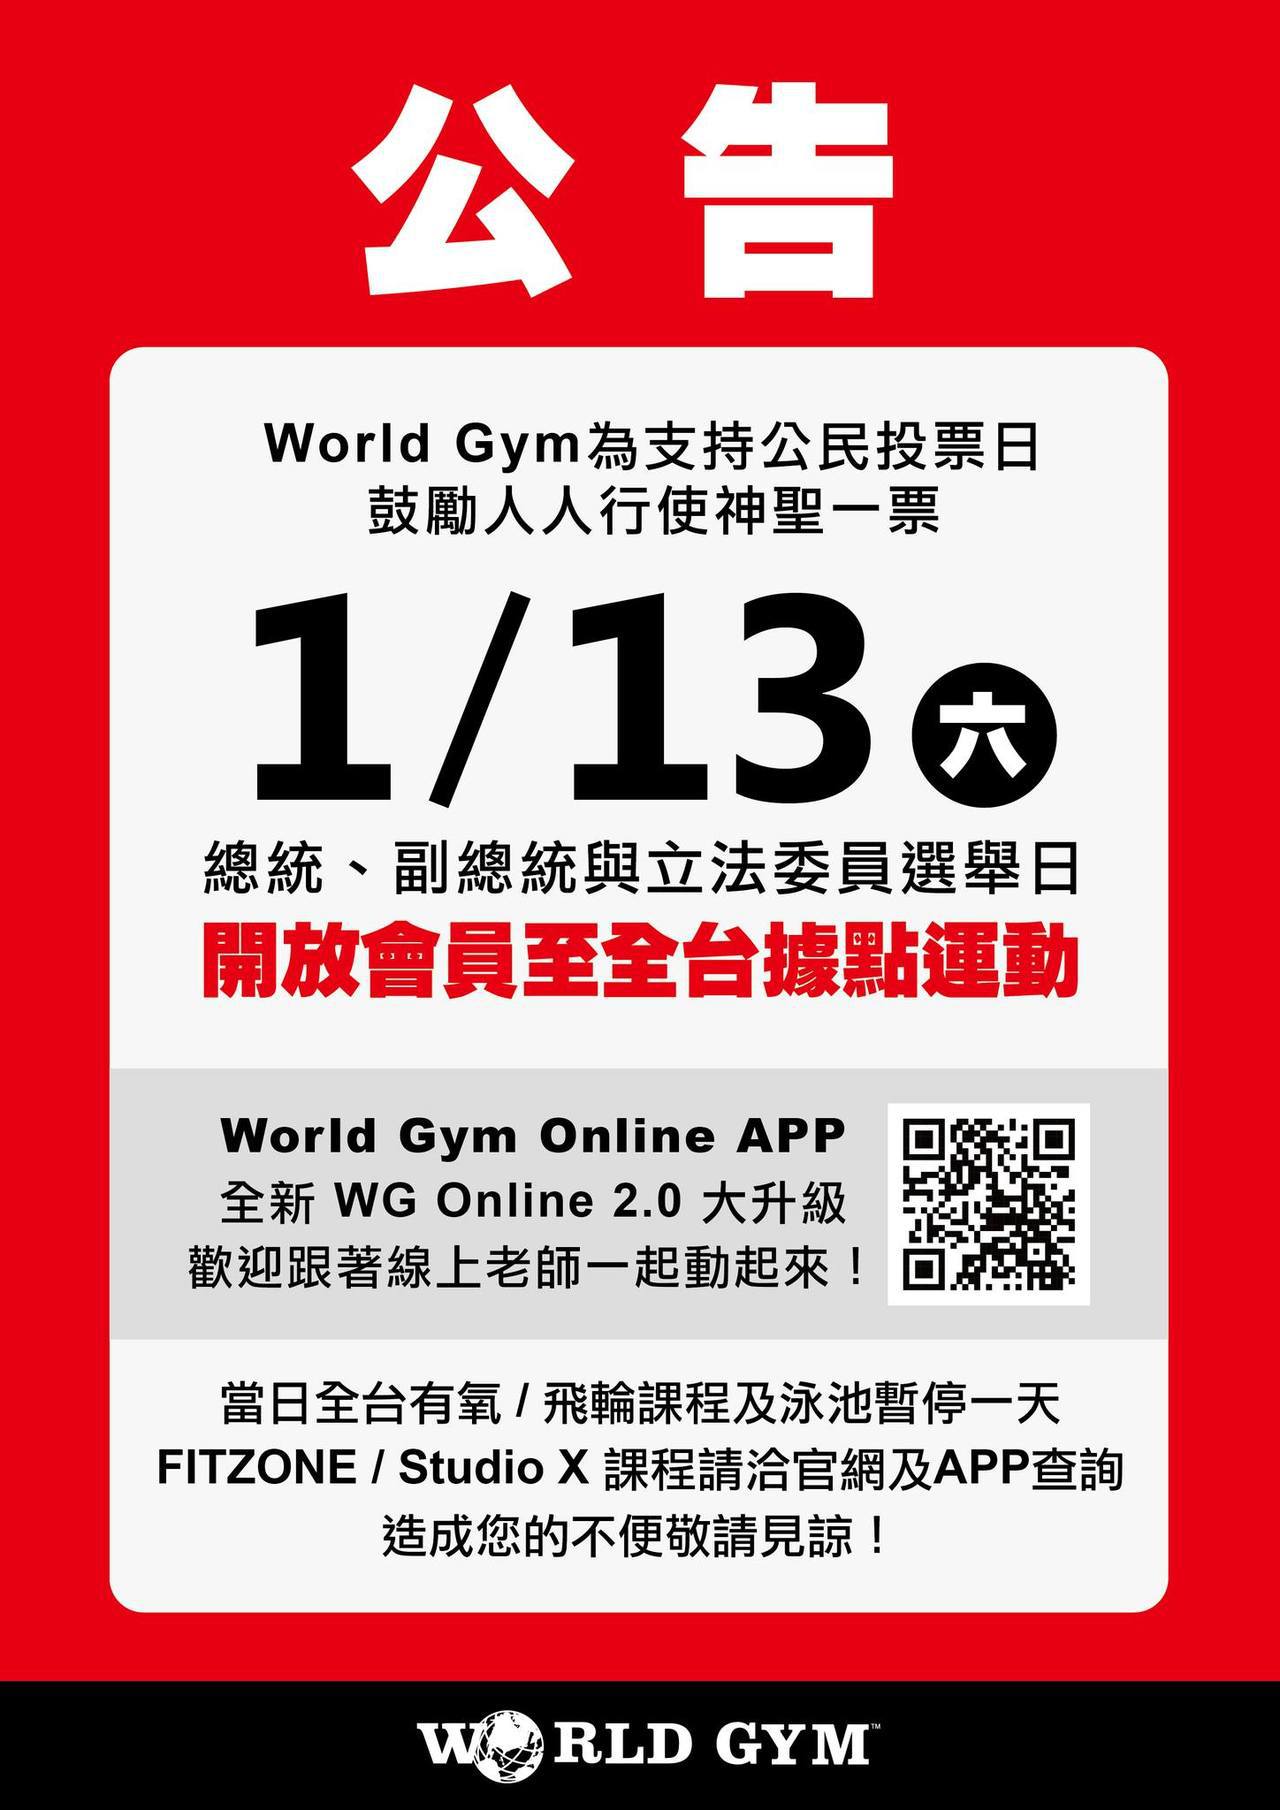 選舉日01月13日 World Gym開放會員至全台據點運動/World Gym